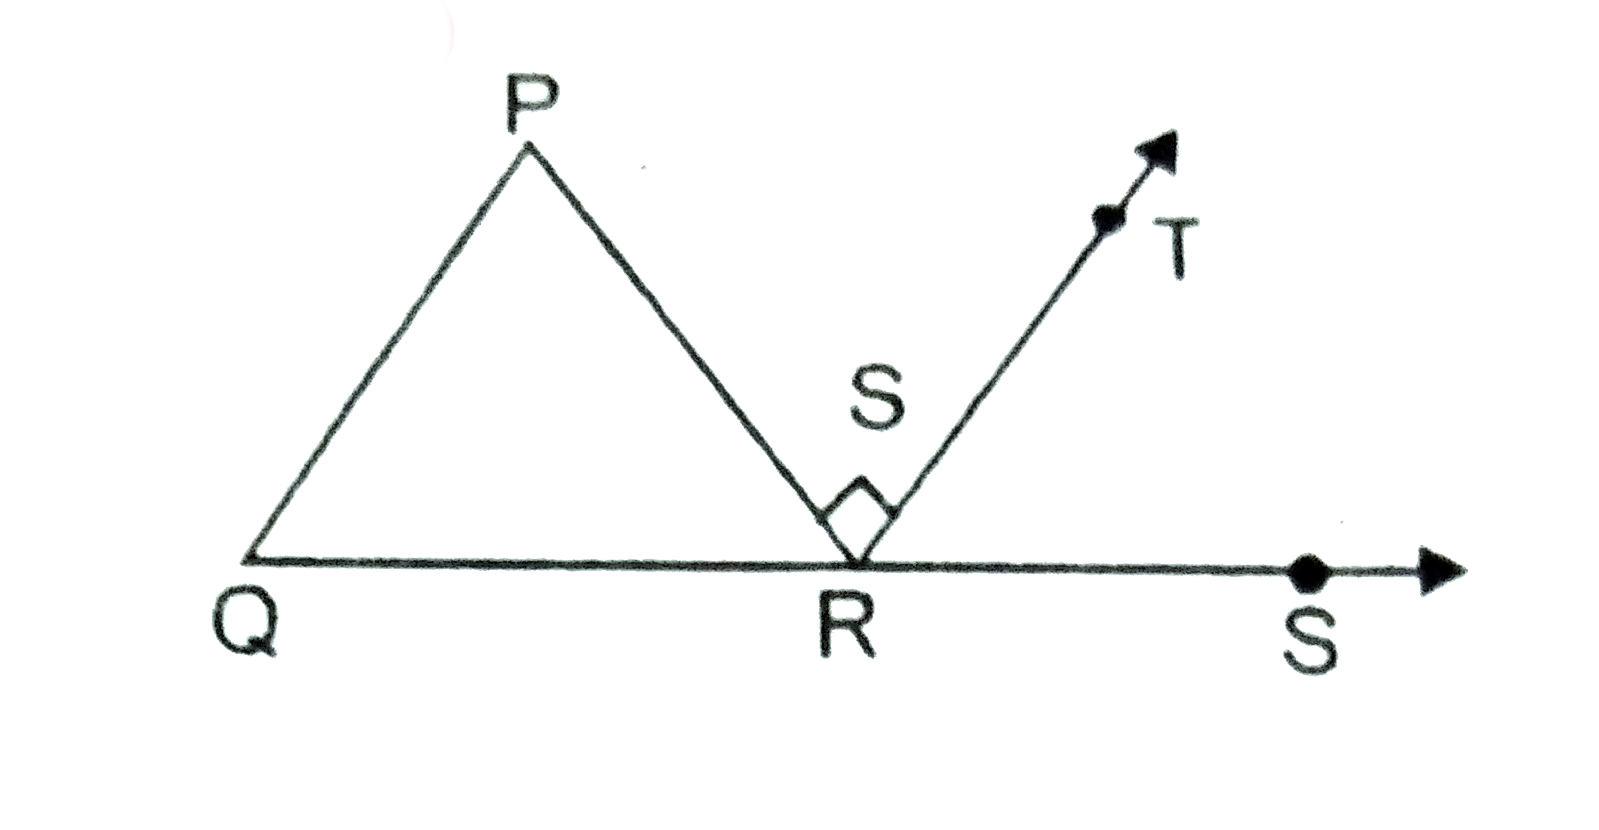 दी गई आकृति में DeltaPQR की भुजा  QR को S तक बढ़ाया गया है। यदि /P:/Q:/R=3:2:1 और   RT|PR हो तो /TRS ज्ञात करें।